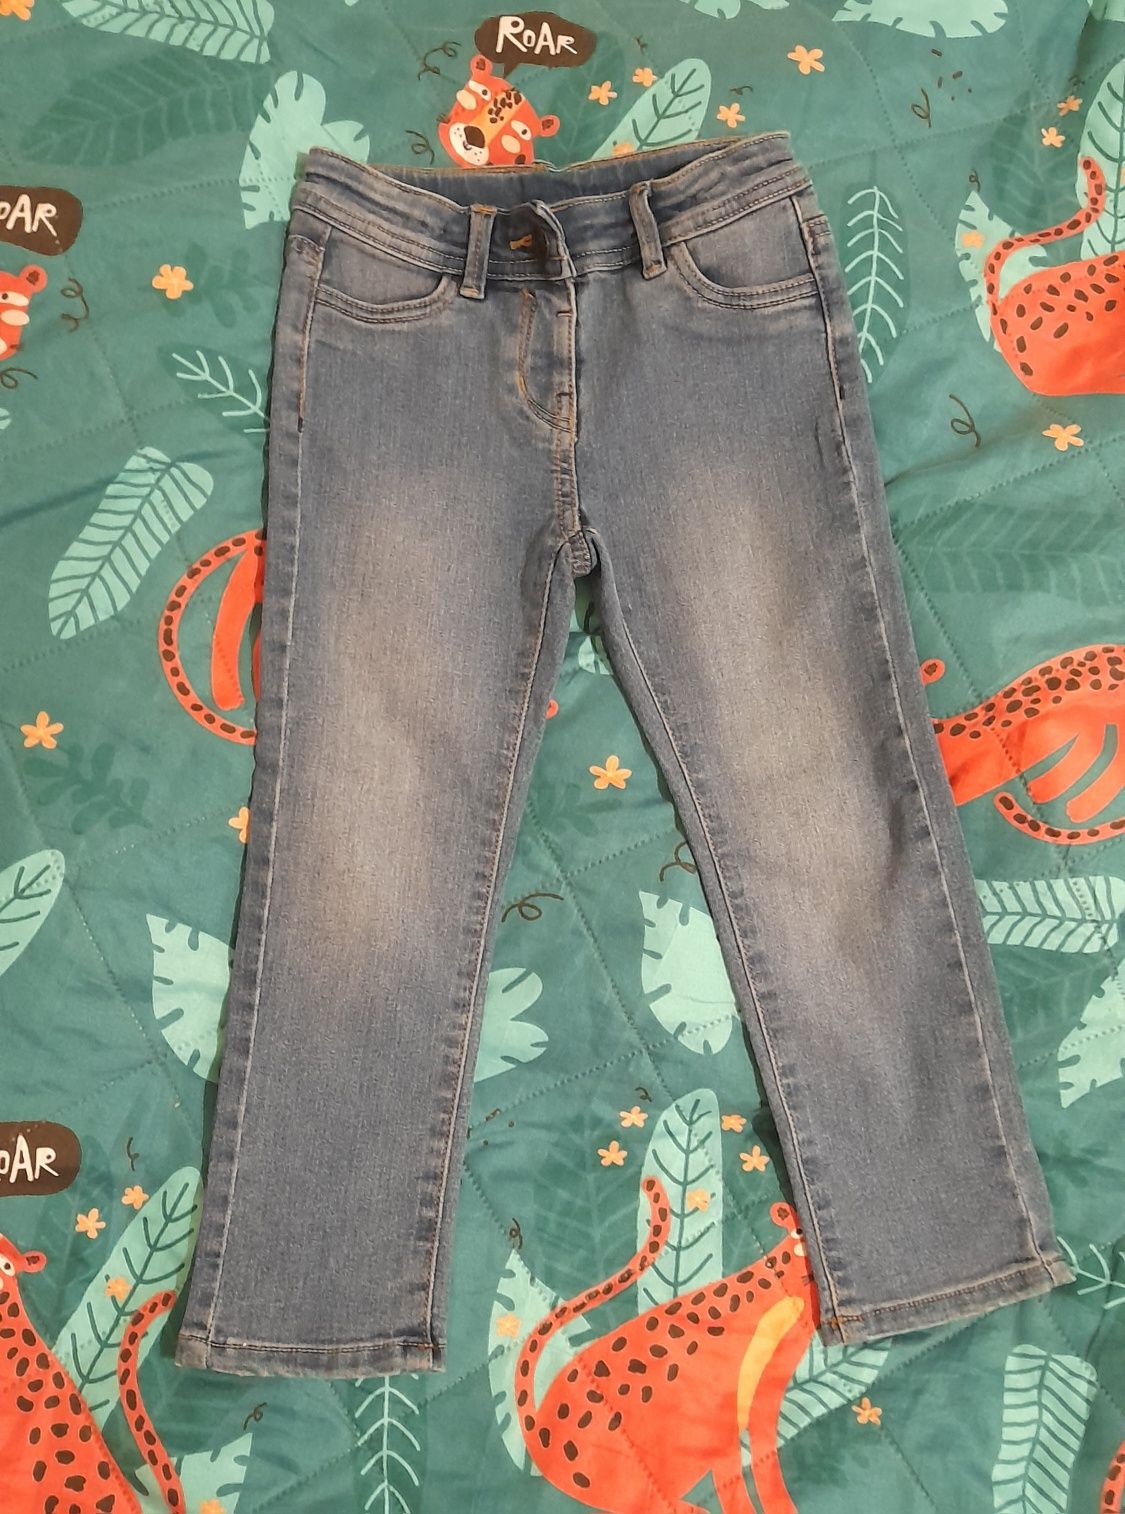 Spodnie jeansowe dla dziewczynki. Rozmiar 104.